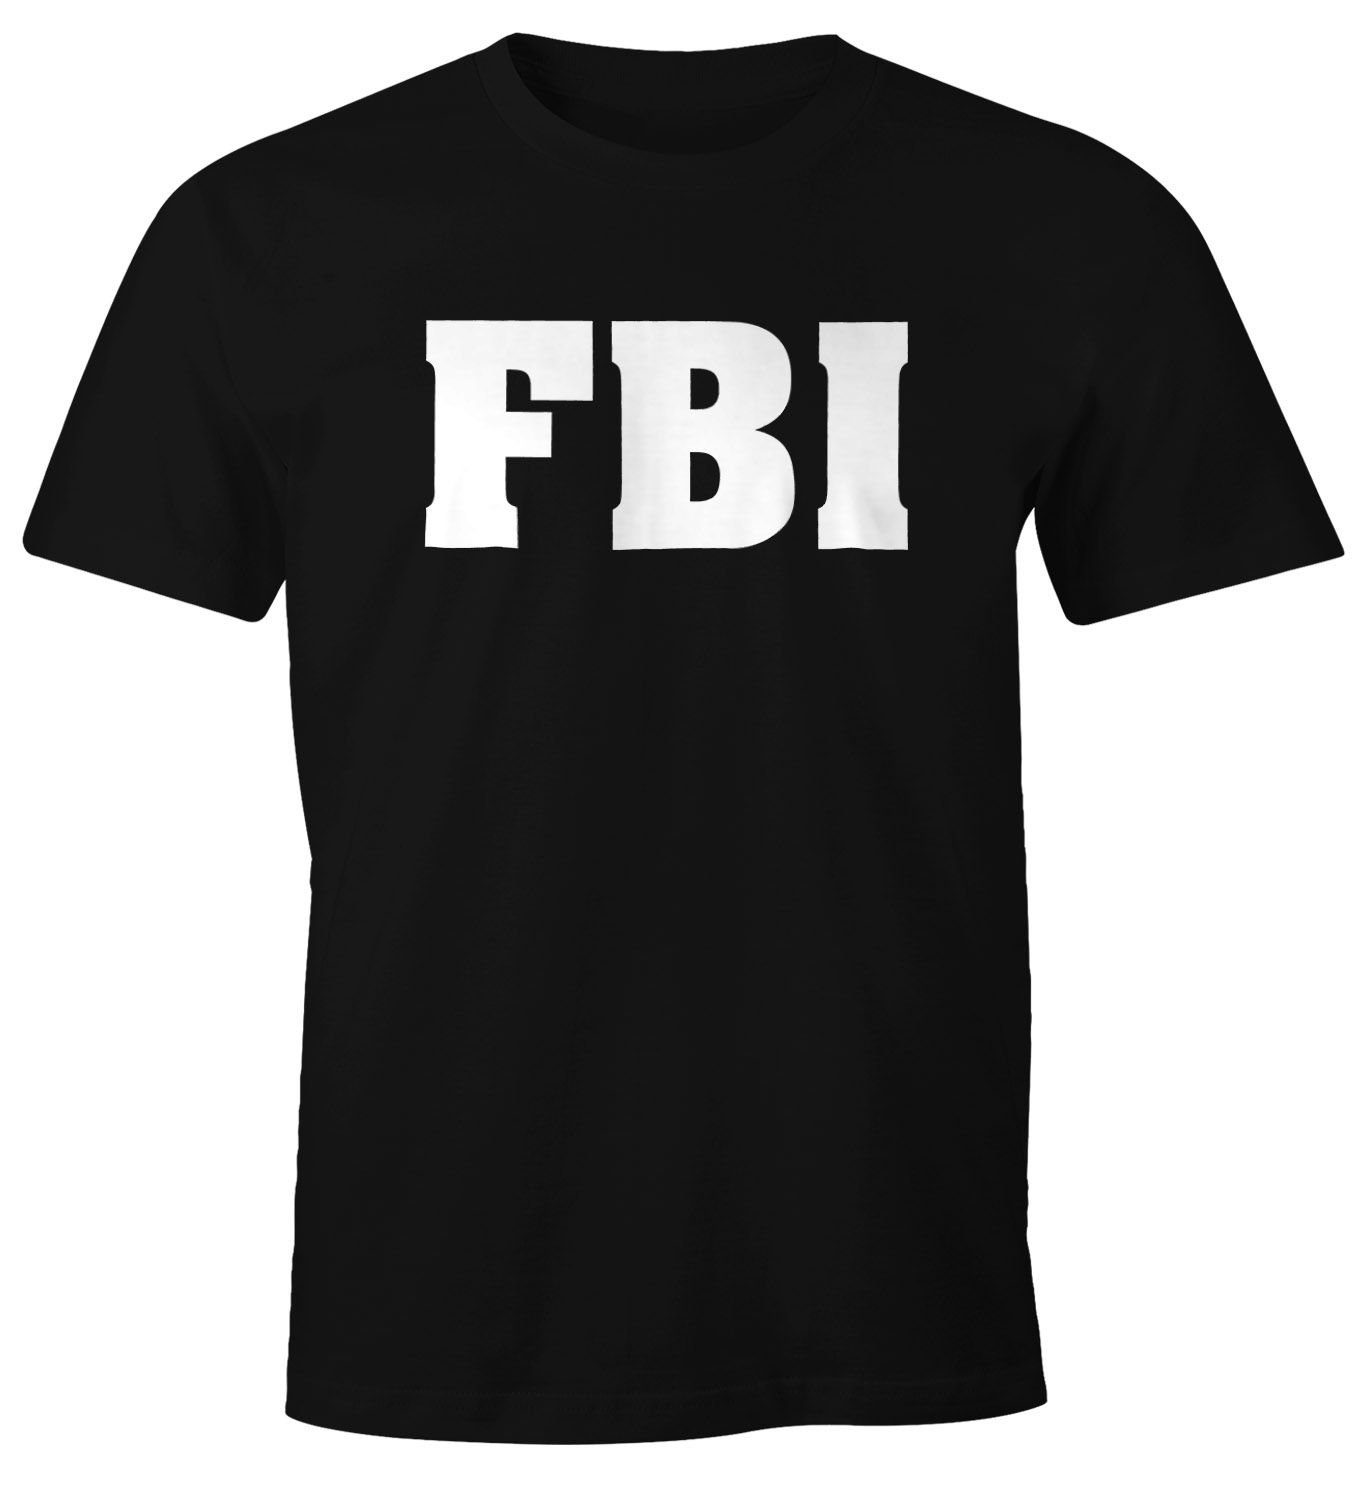 MoonWorks Print-Shirt Herren T-Shirt FBI Aufdruck Faschings-Shirt Kostüm Verkleidung Karneval Fun-Shirt Moonworks® mit Print | T-Shirts